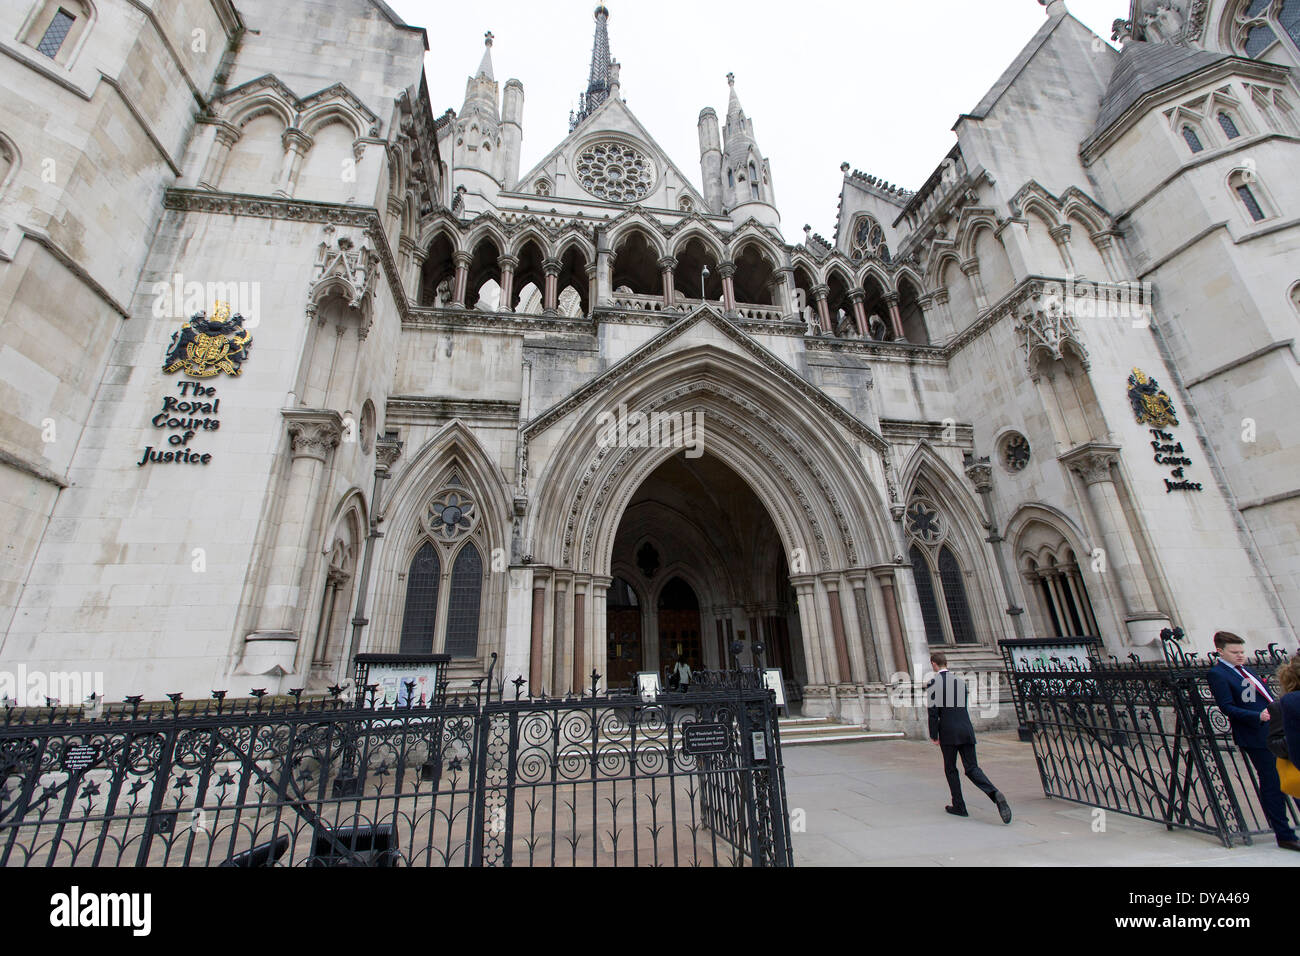 La Royal Courts of Justice, communément appelé le palais de justice, Londres, Royaume-Uni. Banque D'Images